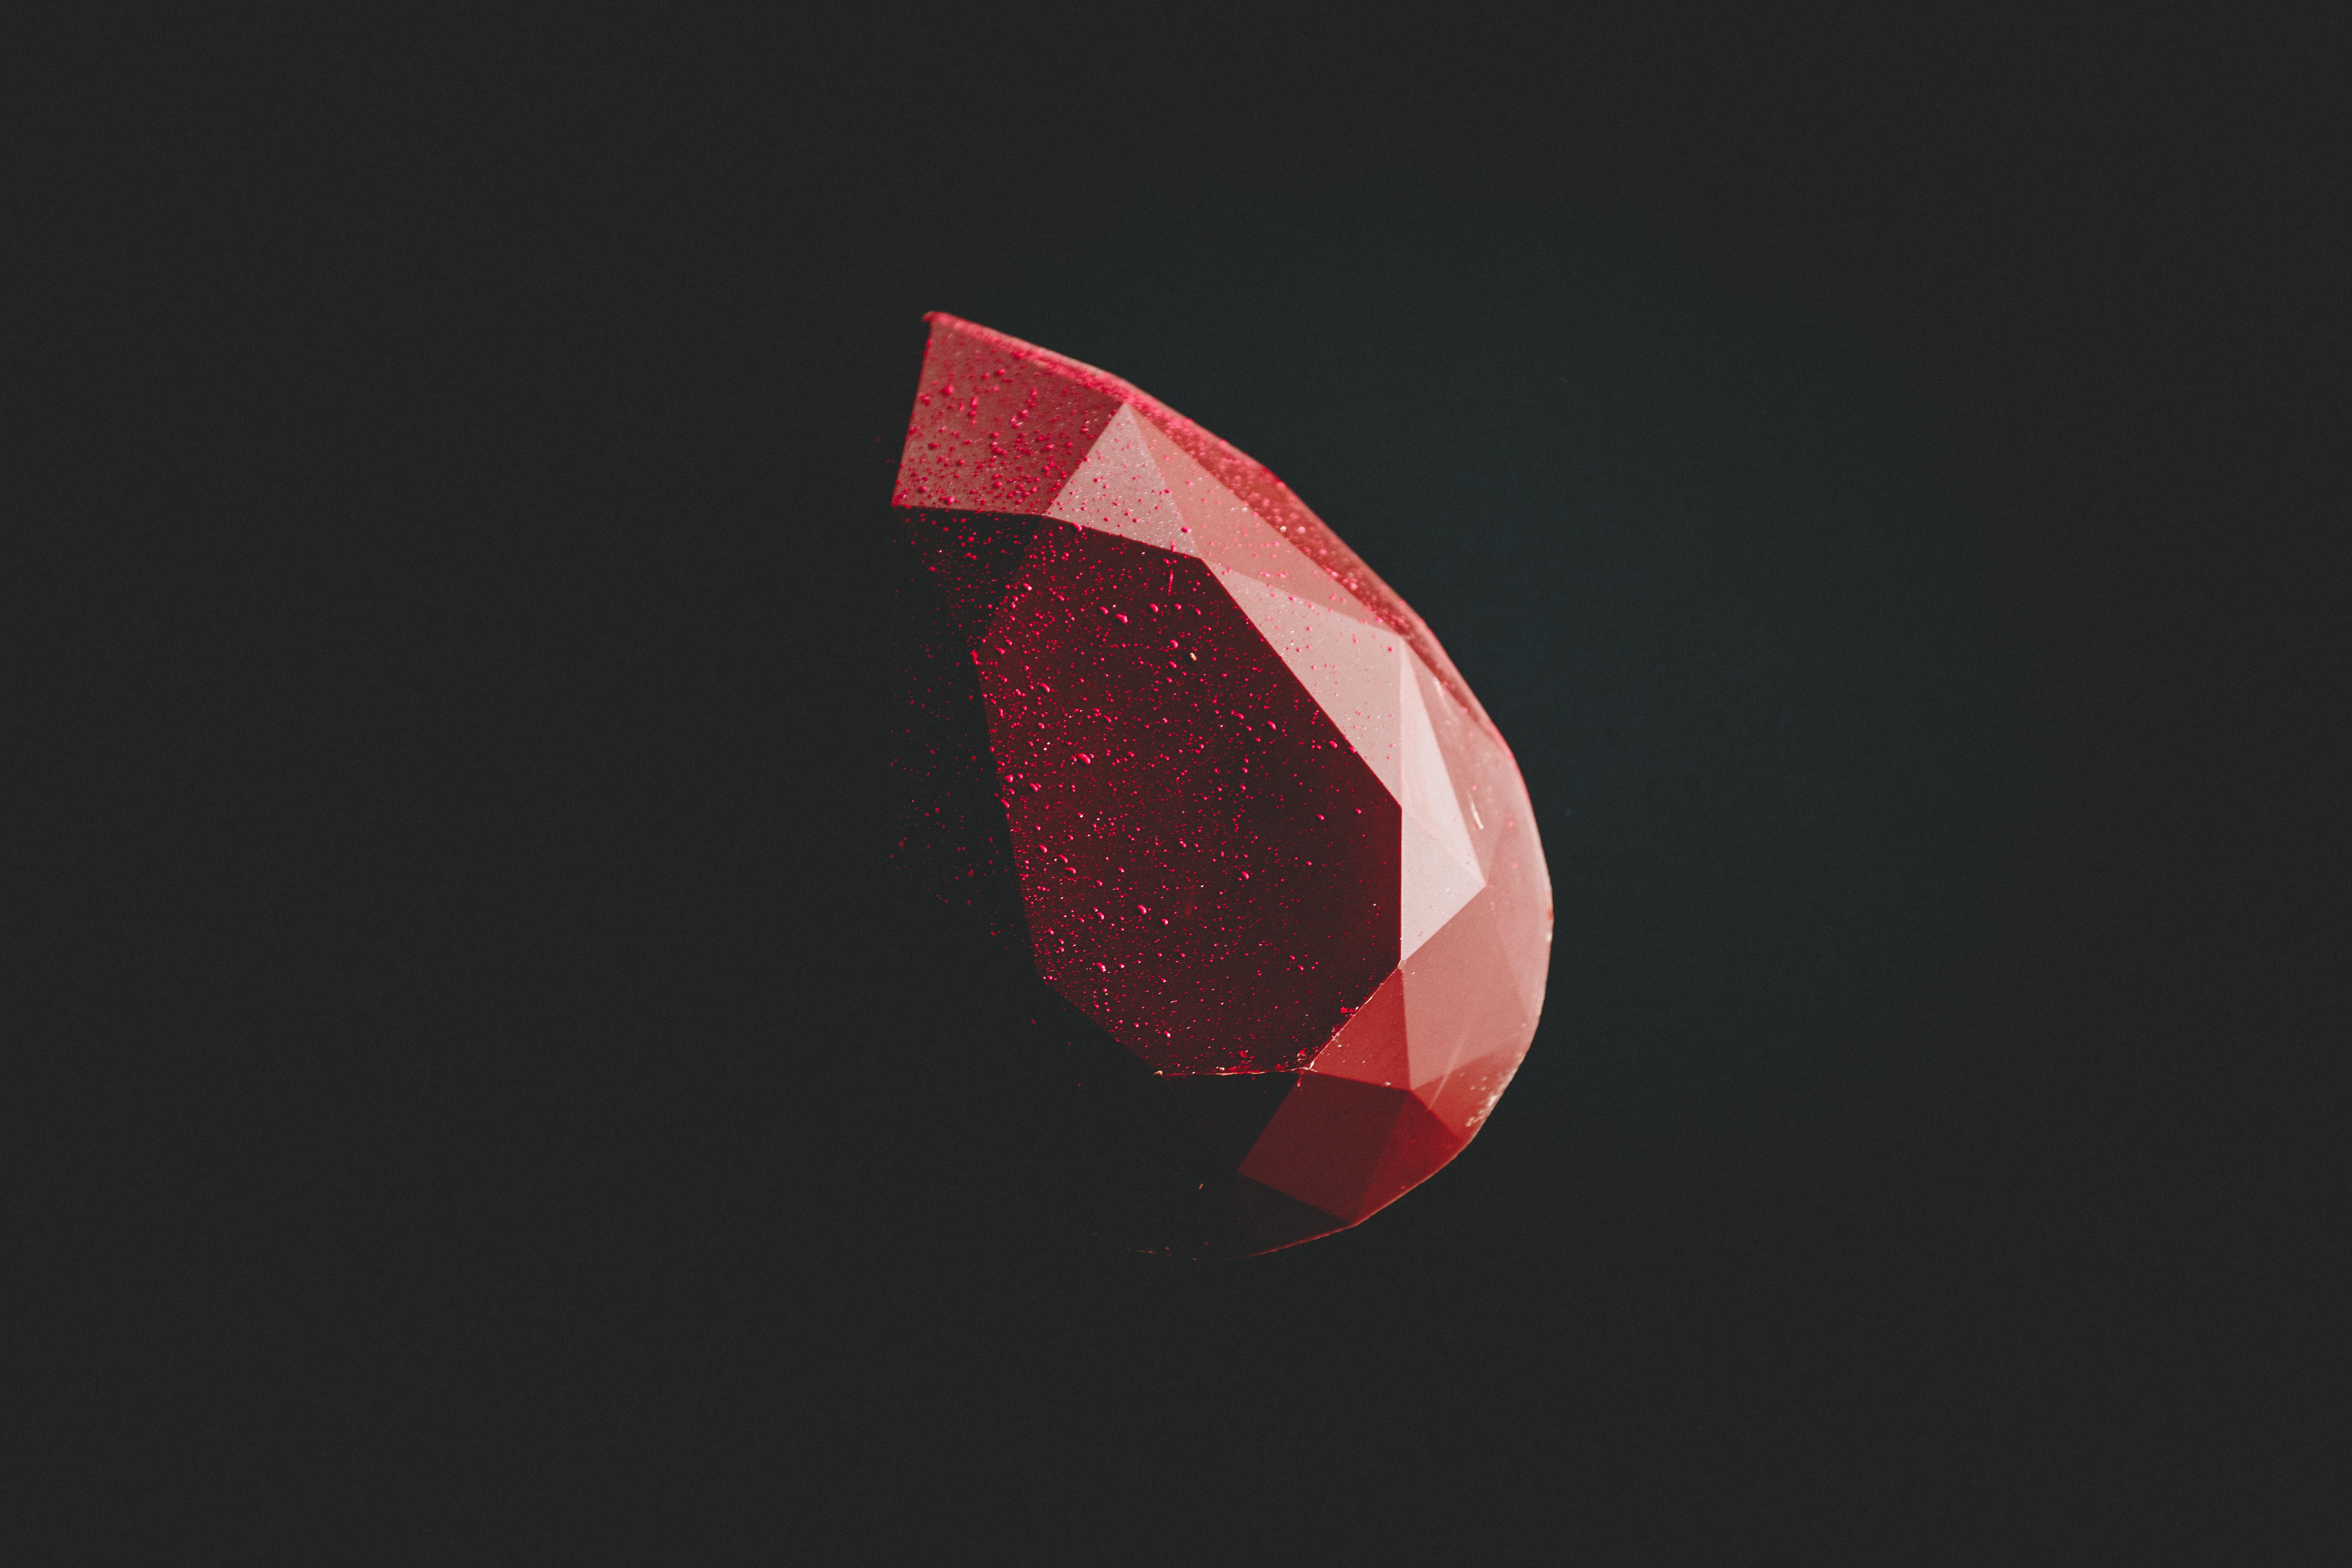 #diamond, #minimalist, #minimalism, #dark, #hd, k, k, #black, #red, #shape HD Wallpaper